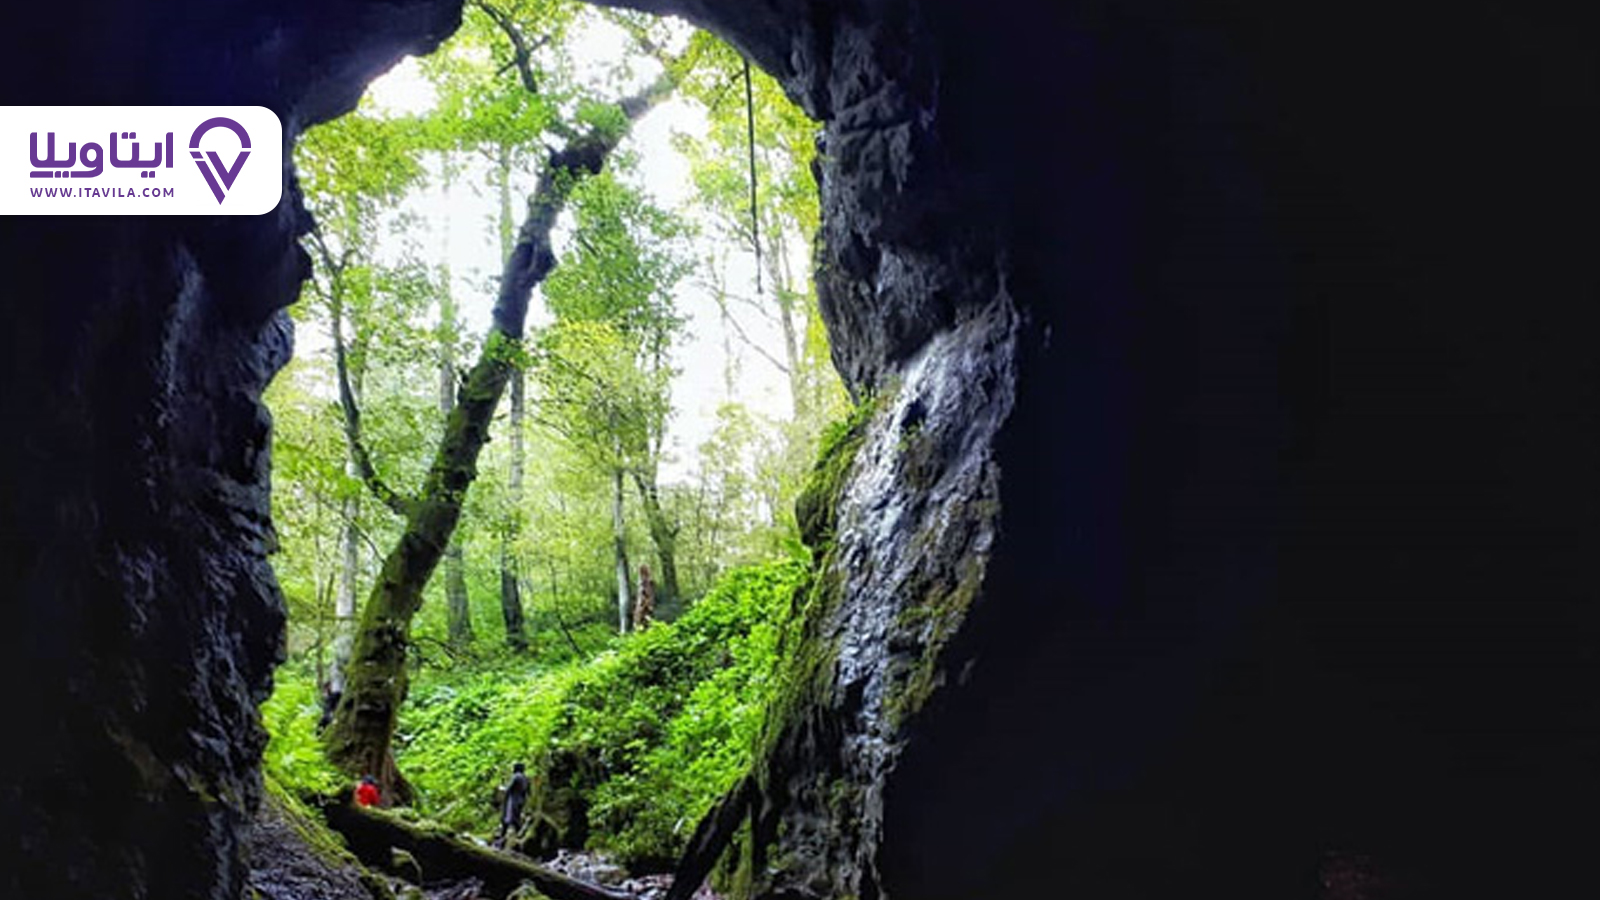 غار آویشو ماسال غاری با قدمت ۷۵ میلیون سال در گیلان